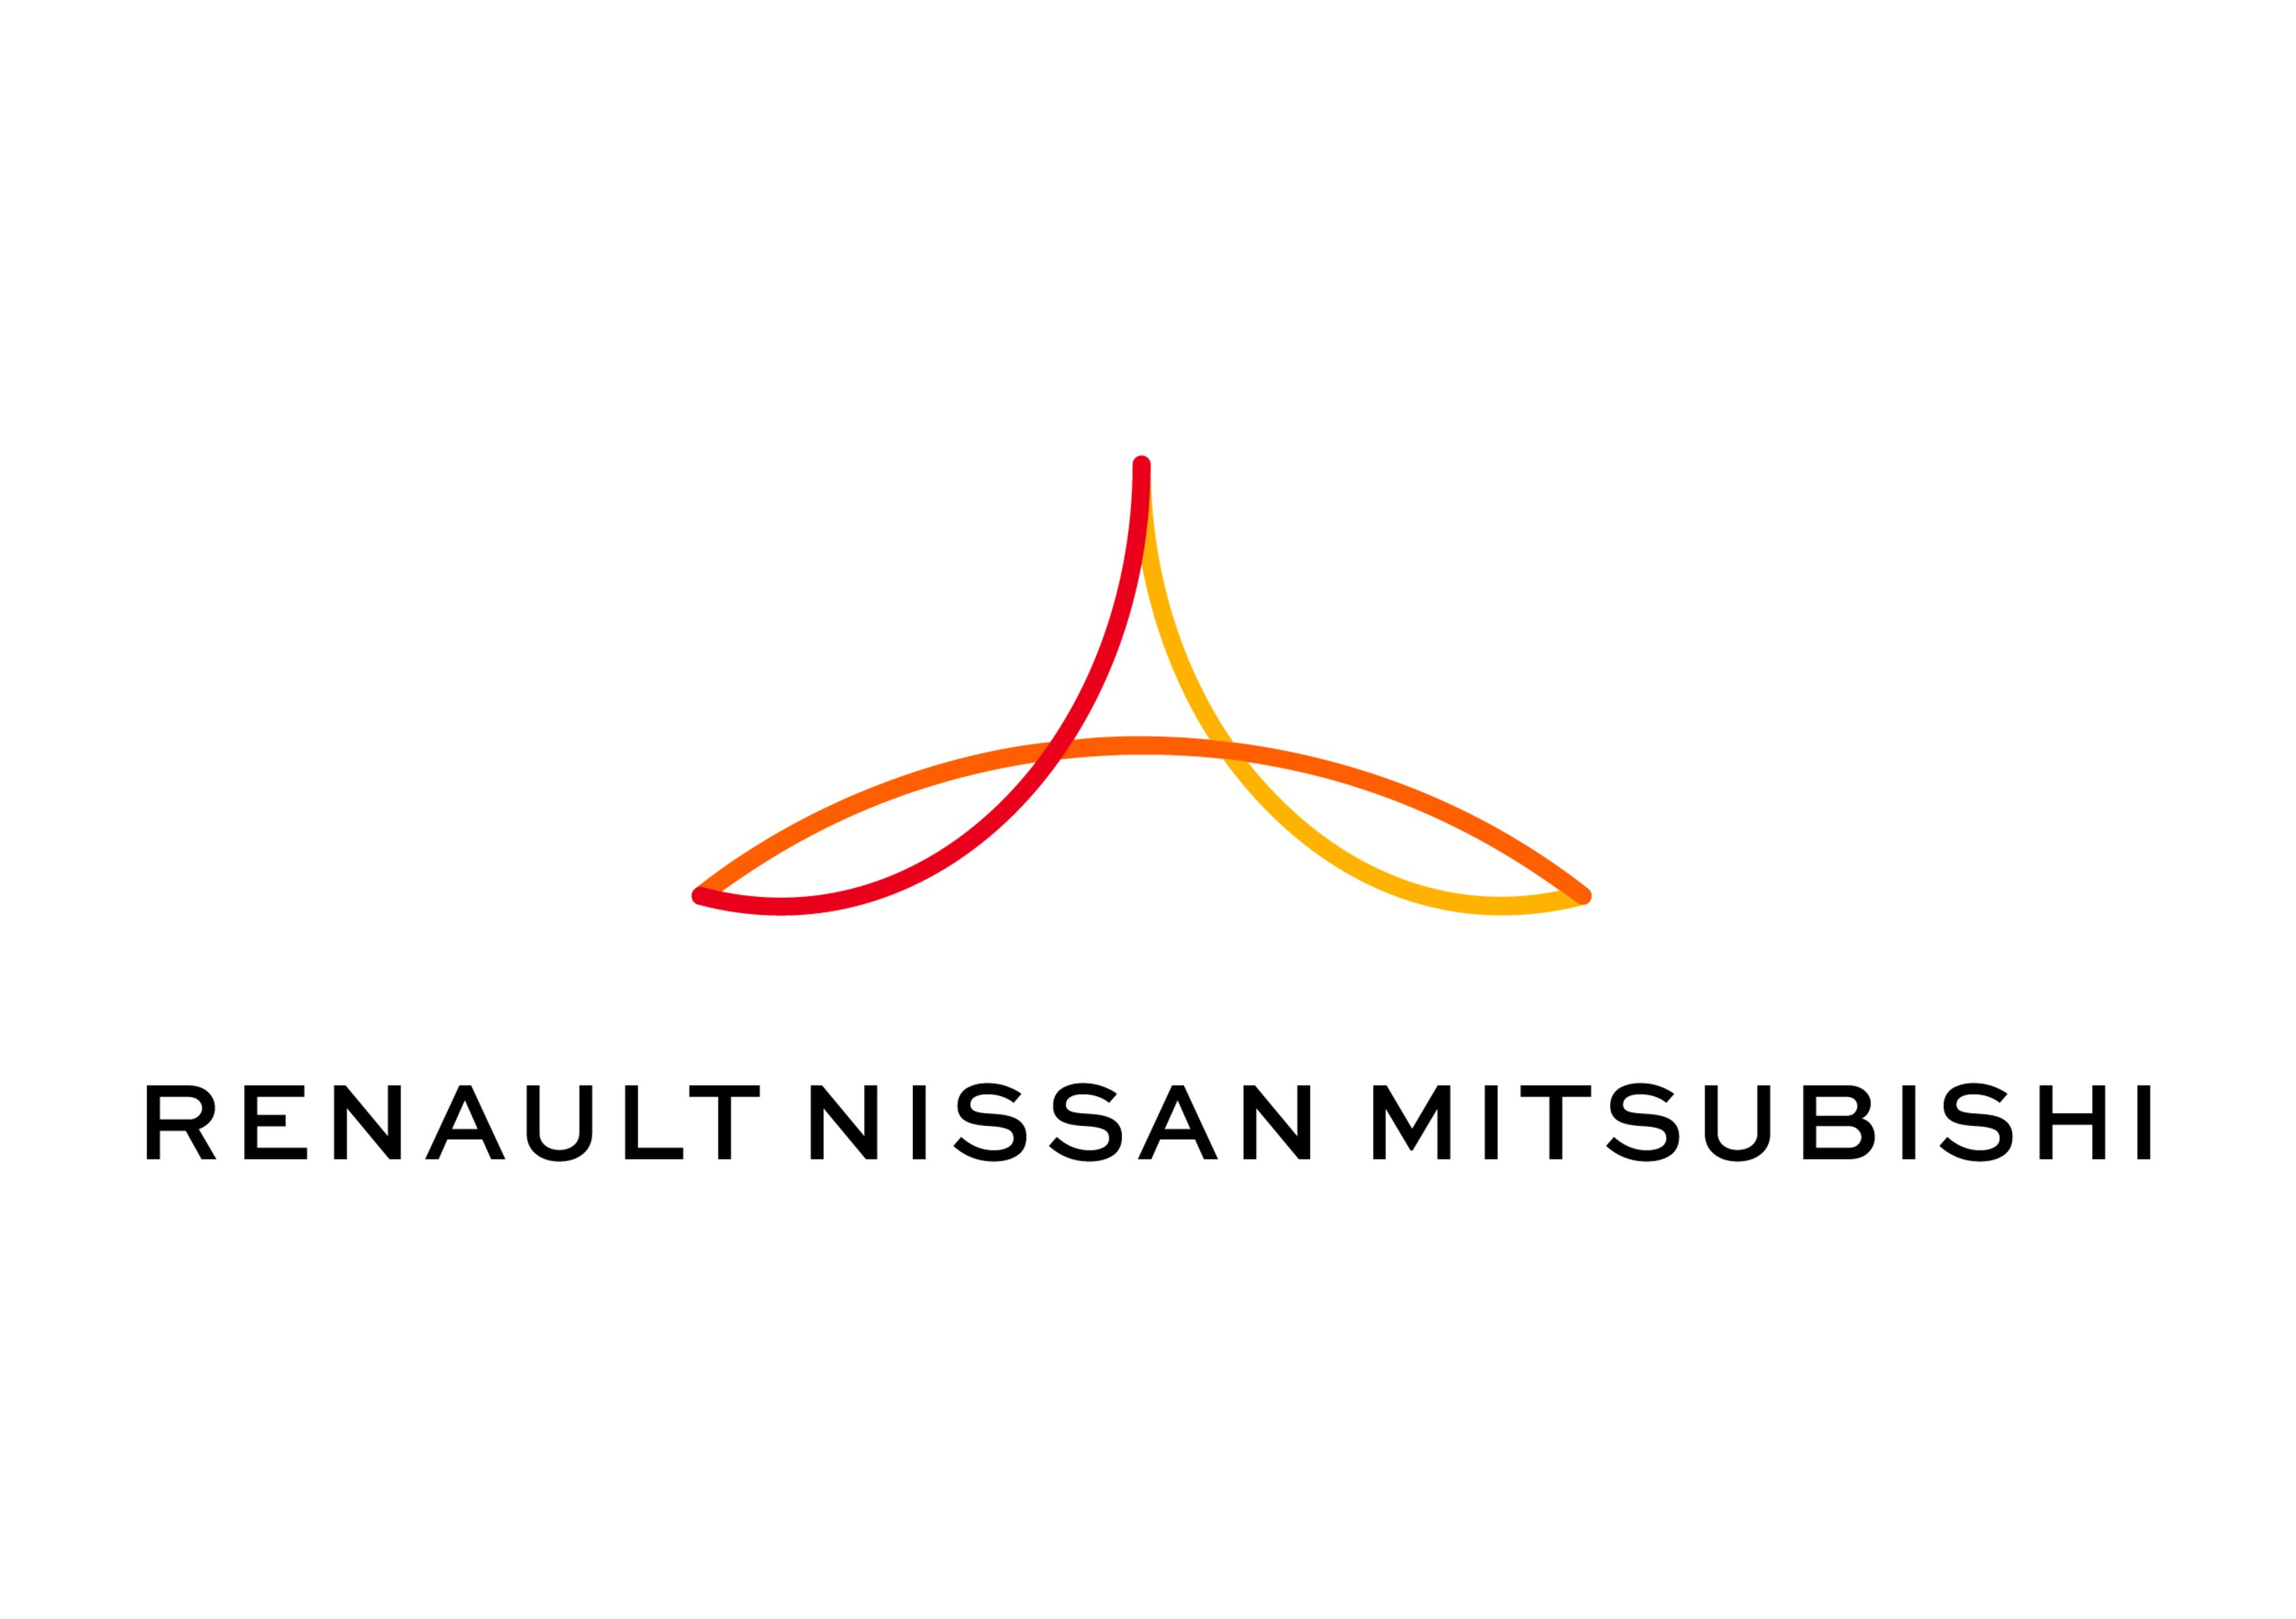 Renault-Nissan-Mitsubishi primo gruppo al mondo nel 2017